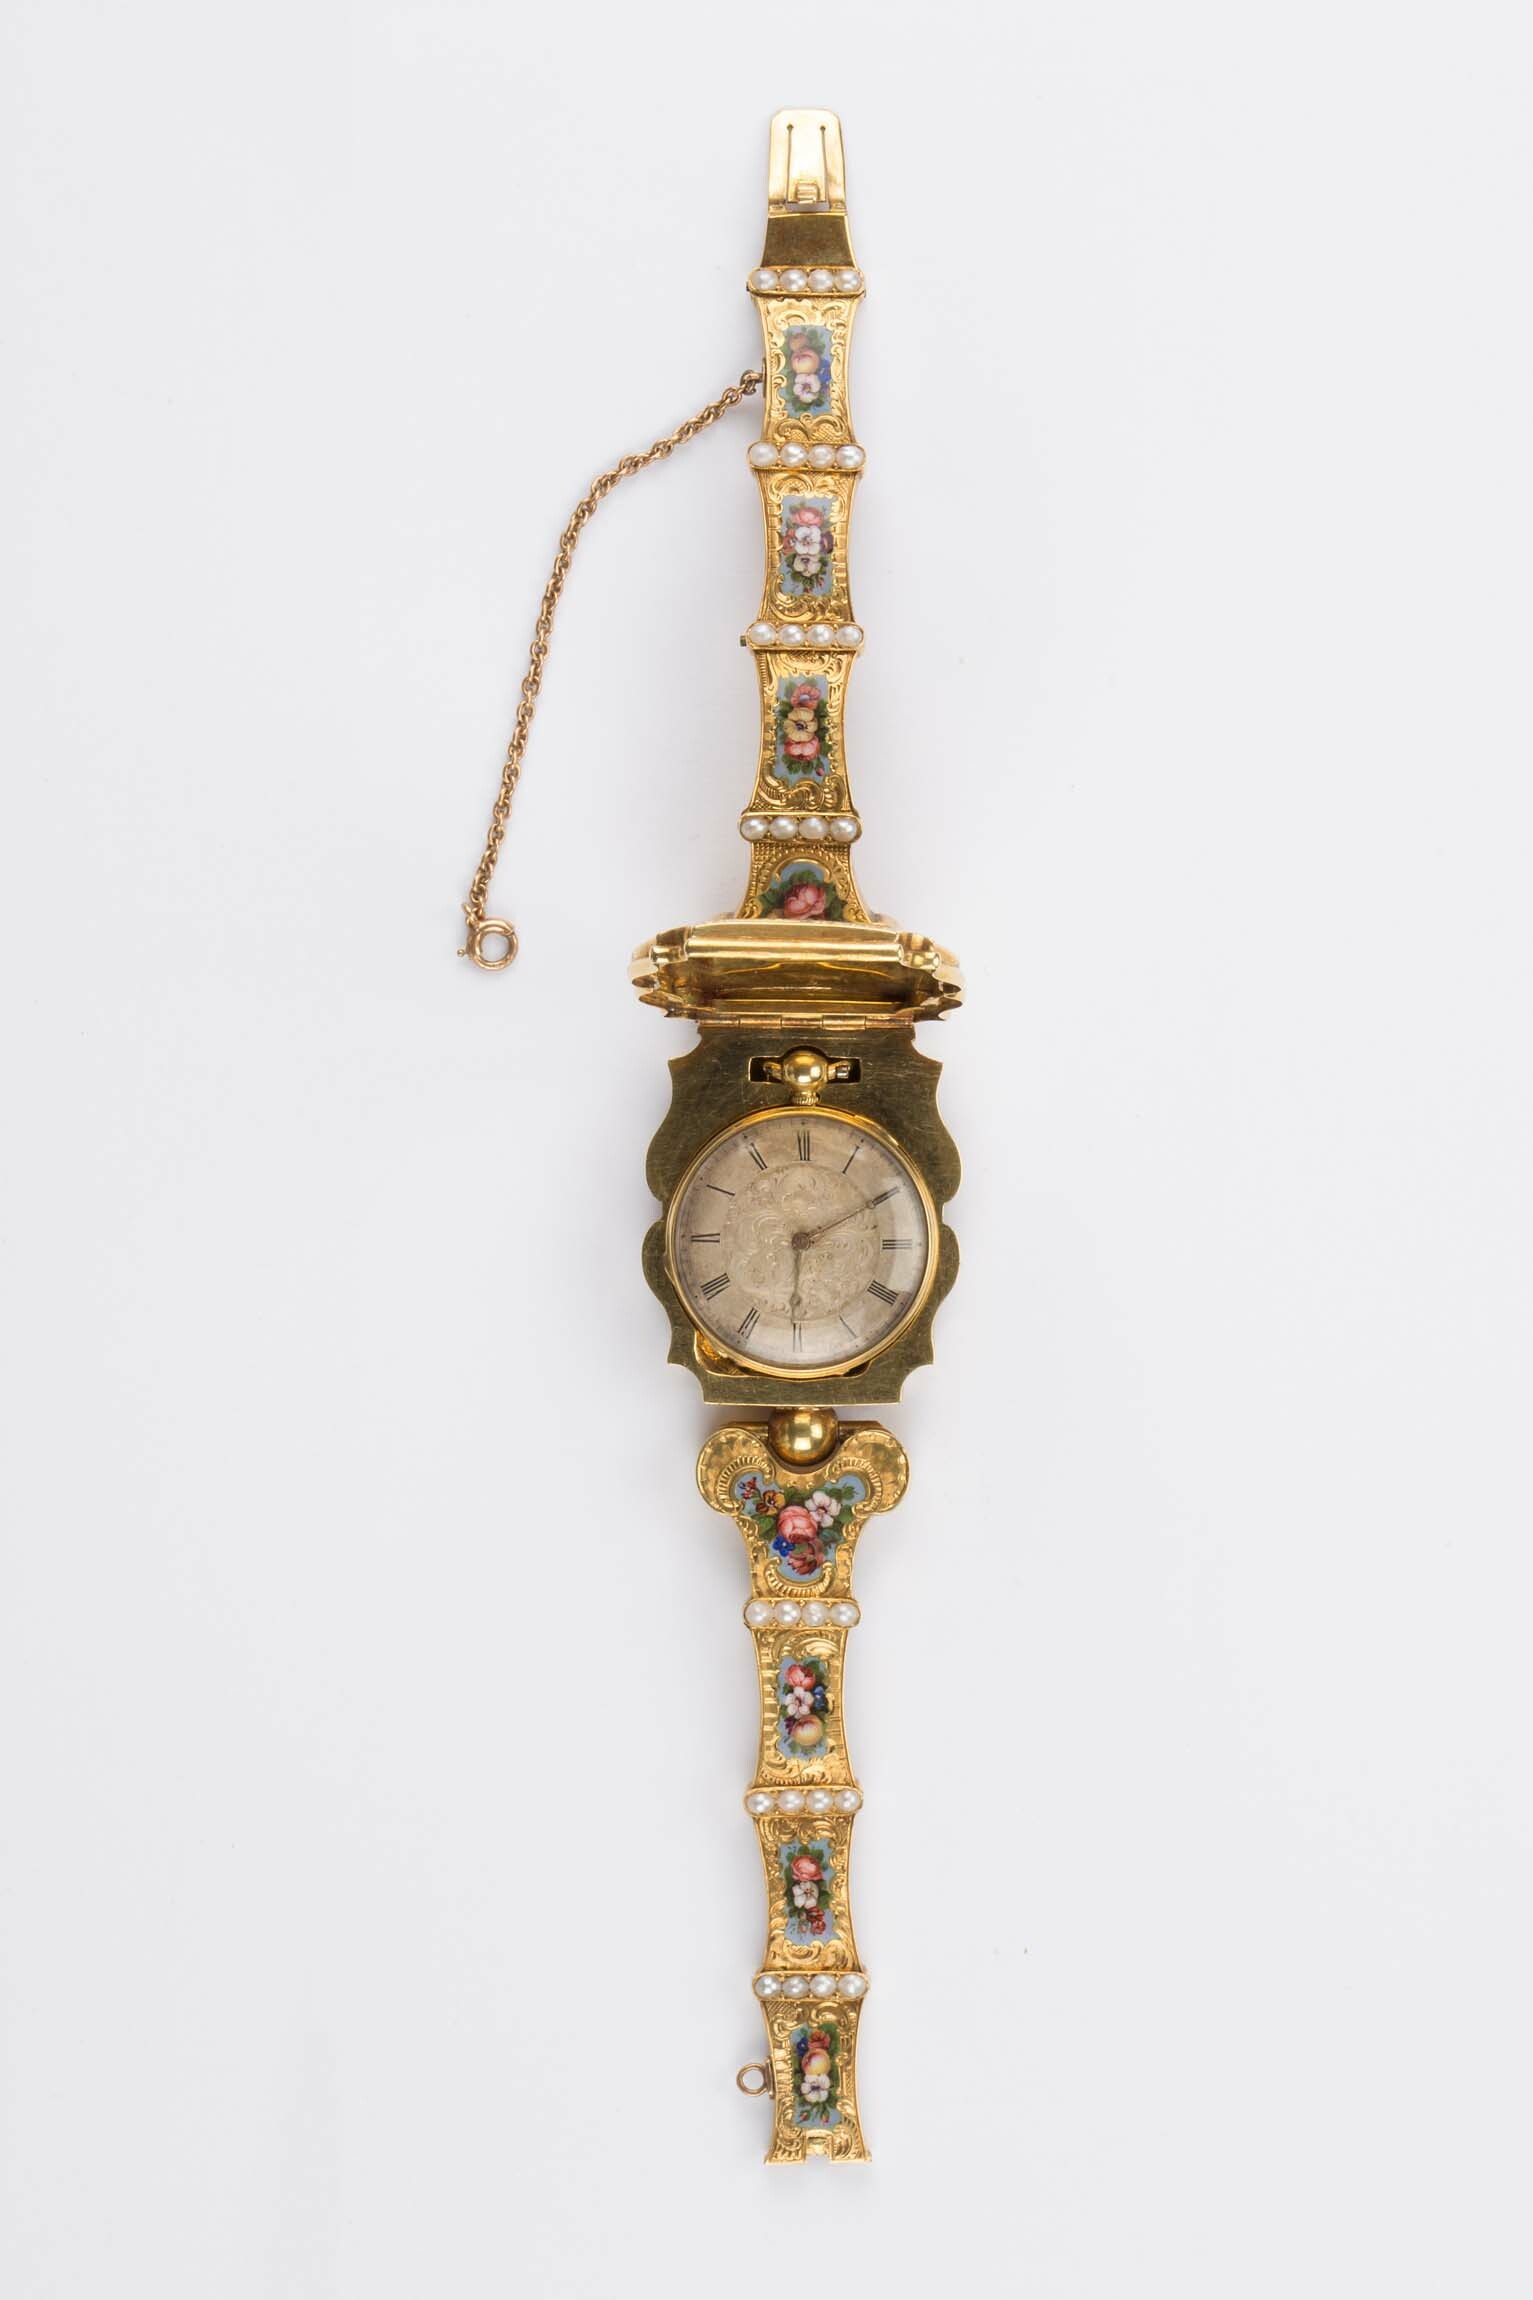 Armband mit eingesetzter Taschenuhr, Henri Capt, Genf, um 1850 (Deutsches Uhrenmuseum CC BY-SA)